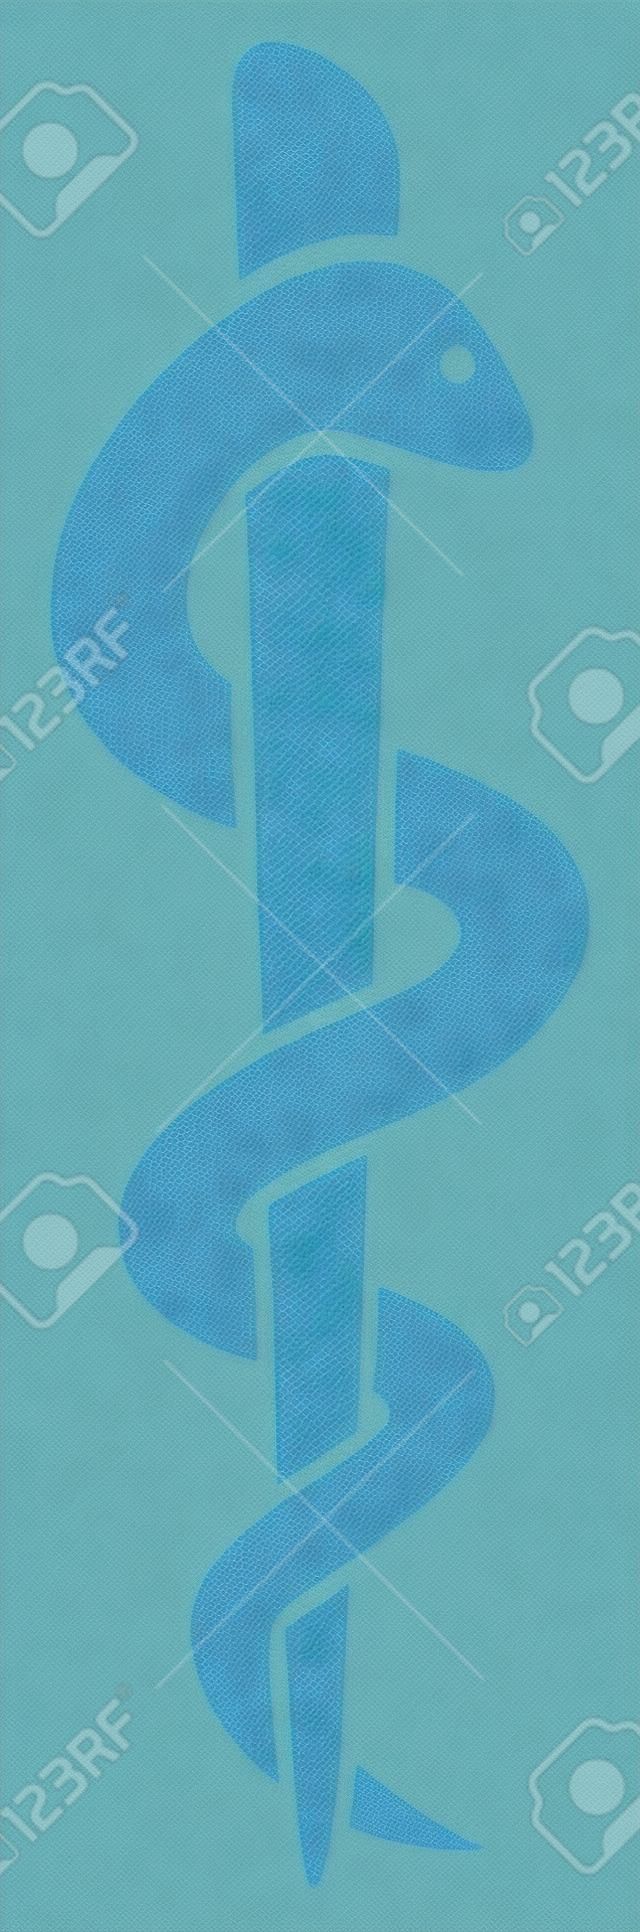 Símbolo médico del caduceo con el emblema de serpiente palo para farmacia o medicina, muestra médica azul, símbolo de la farmacia, farmacia símbolo serpiente